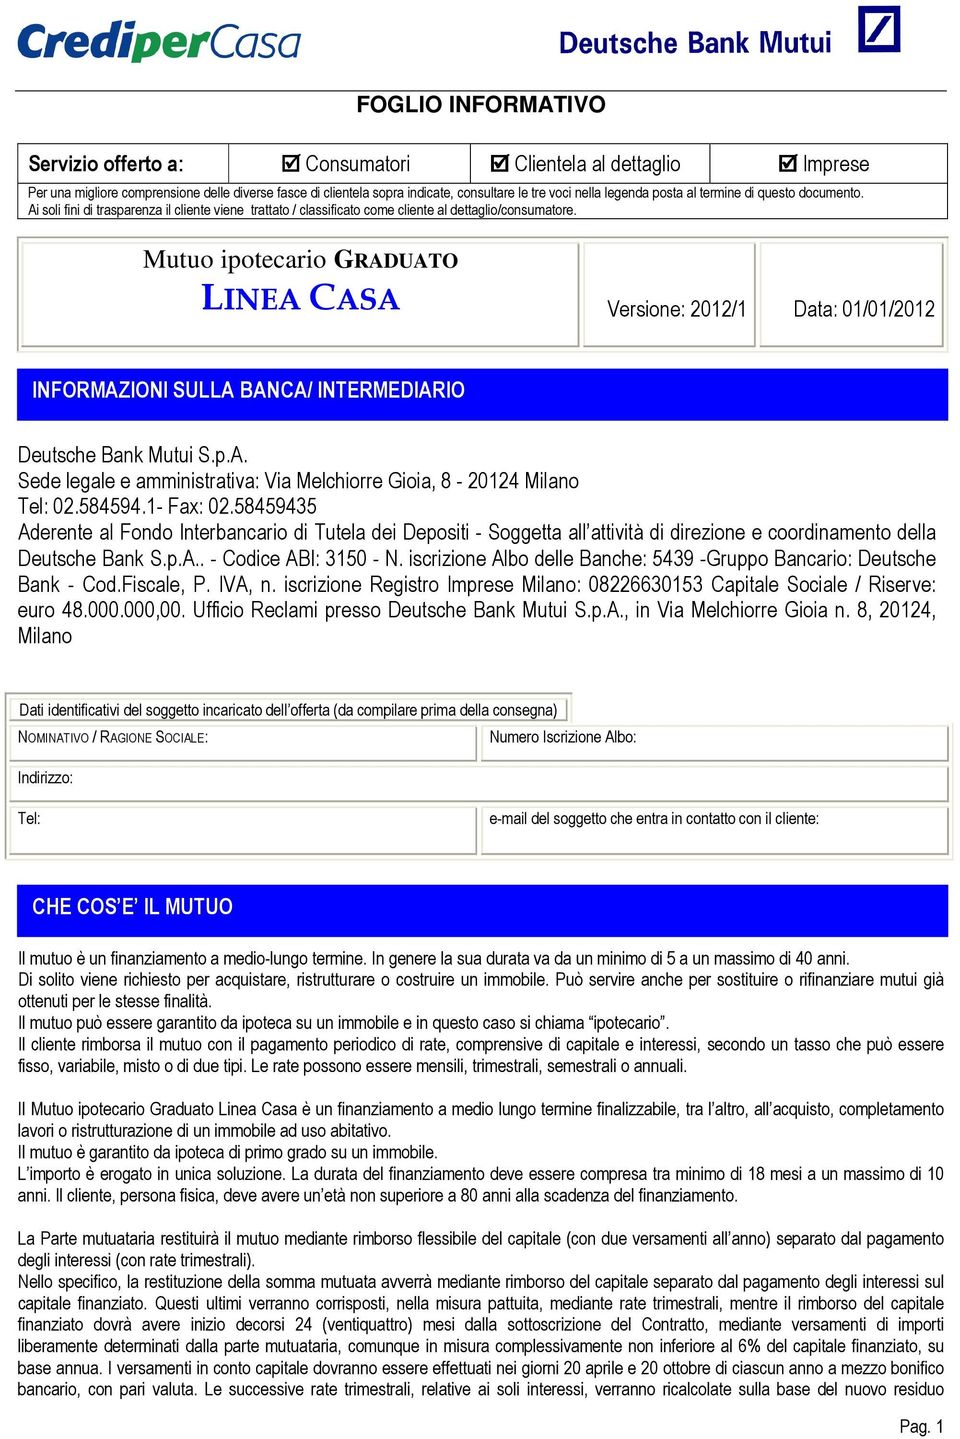 Mutuo ipotecario GRADUATO LINEA CASA Versione: 2012/1 Data: 01/01/2012 INFORMAZIONI SULLA BANCA/ INTERMEDIARIO Deutsche Bank Mutui S.p.A. Sede legale e amministrativa: Via Melchiorre Gioia, 8-20124 Milano Tel: 02.